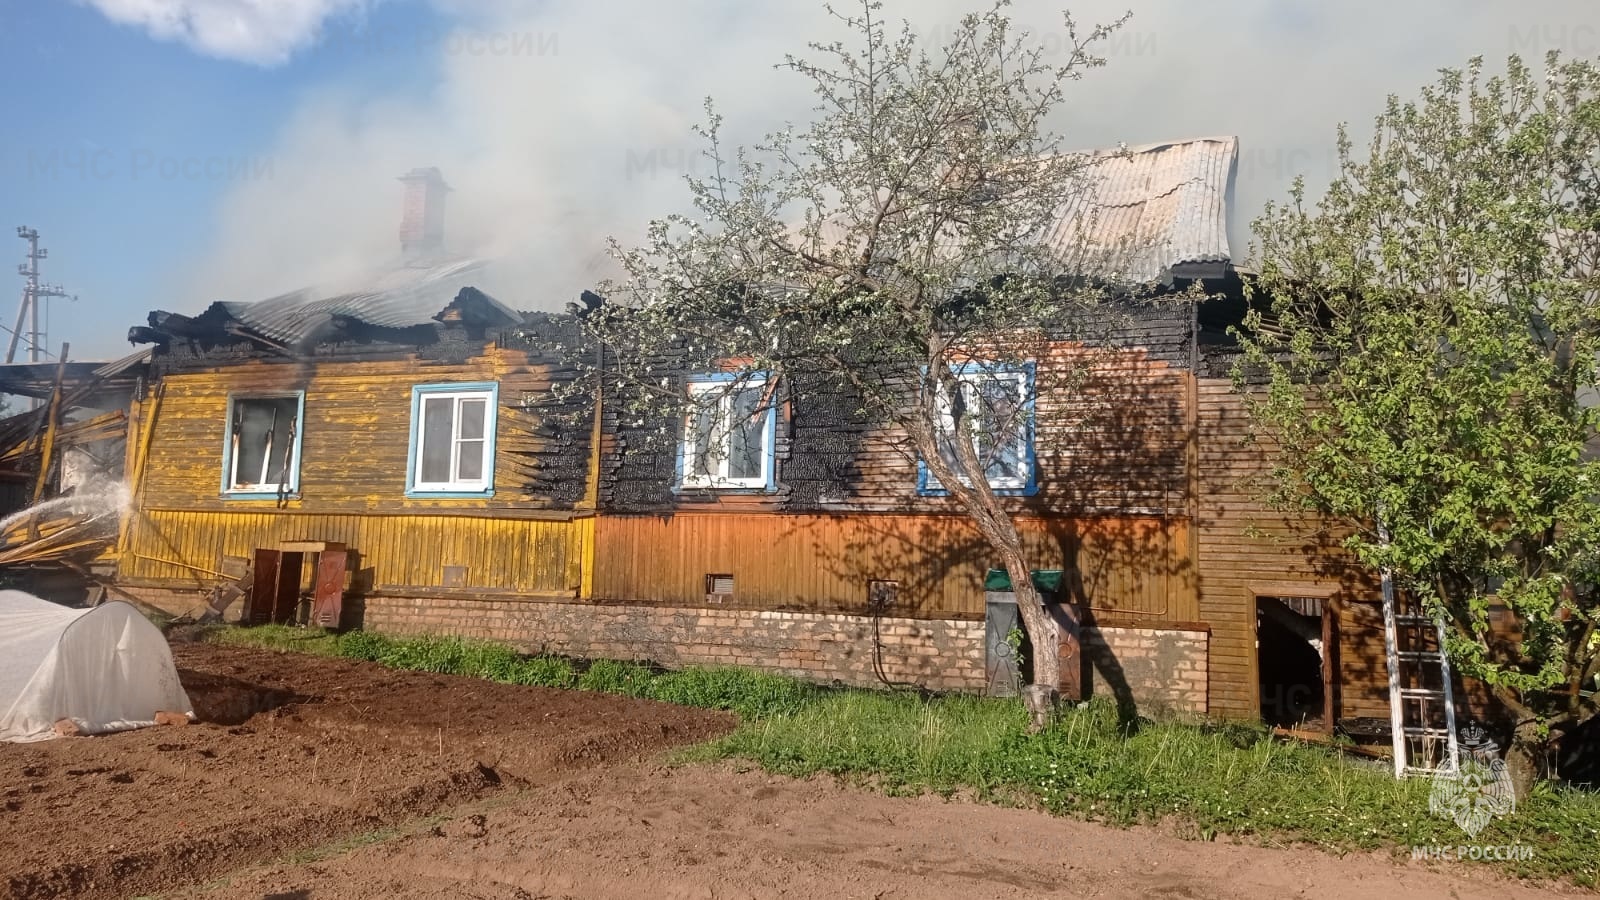 Пожилой мужчина получил ожоги на пожаре в костромском райцентре